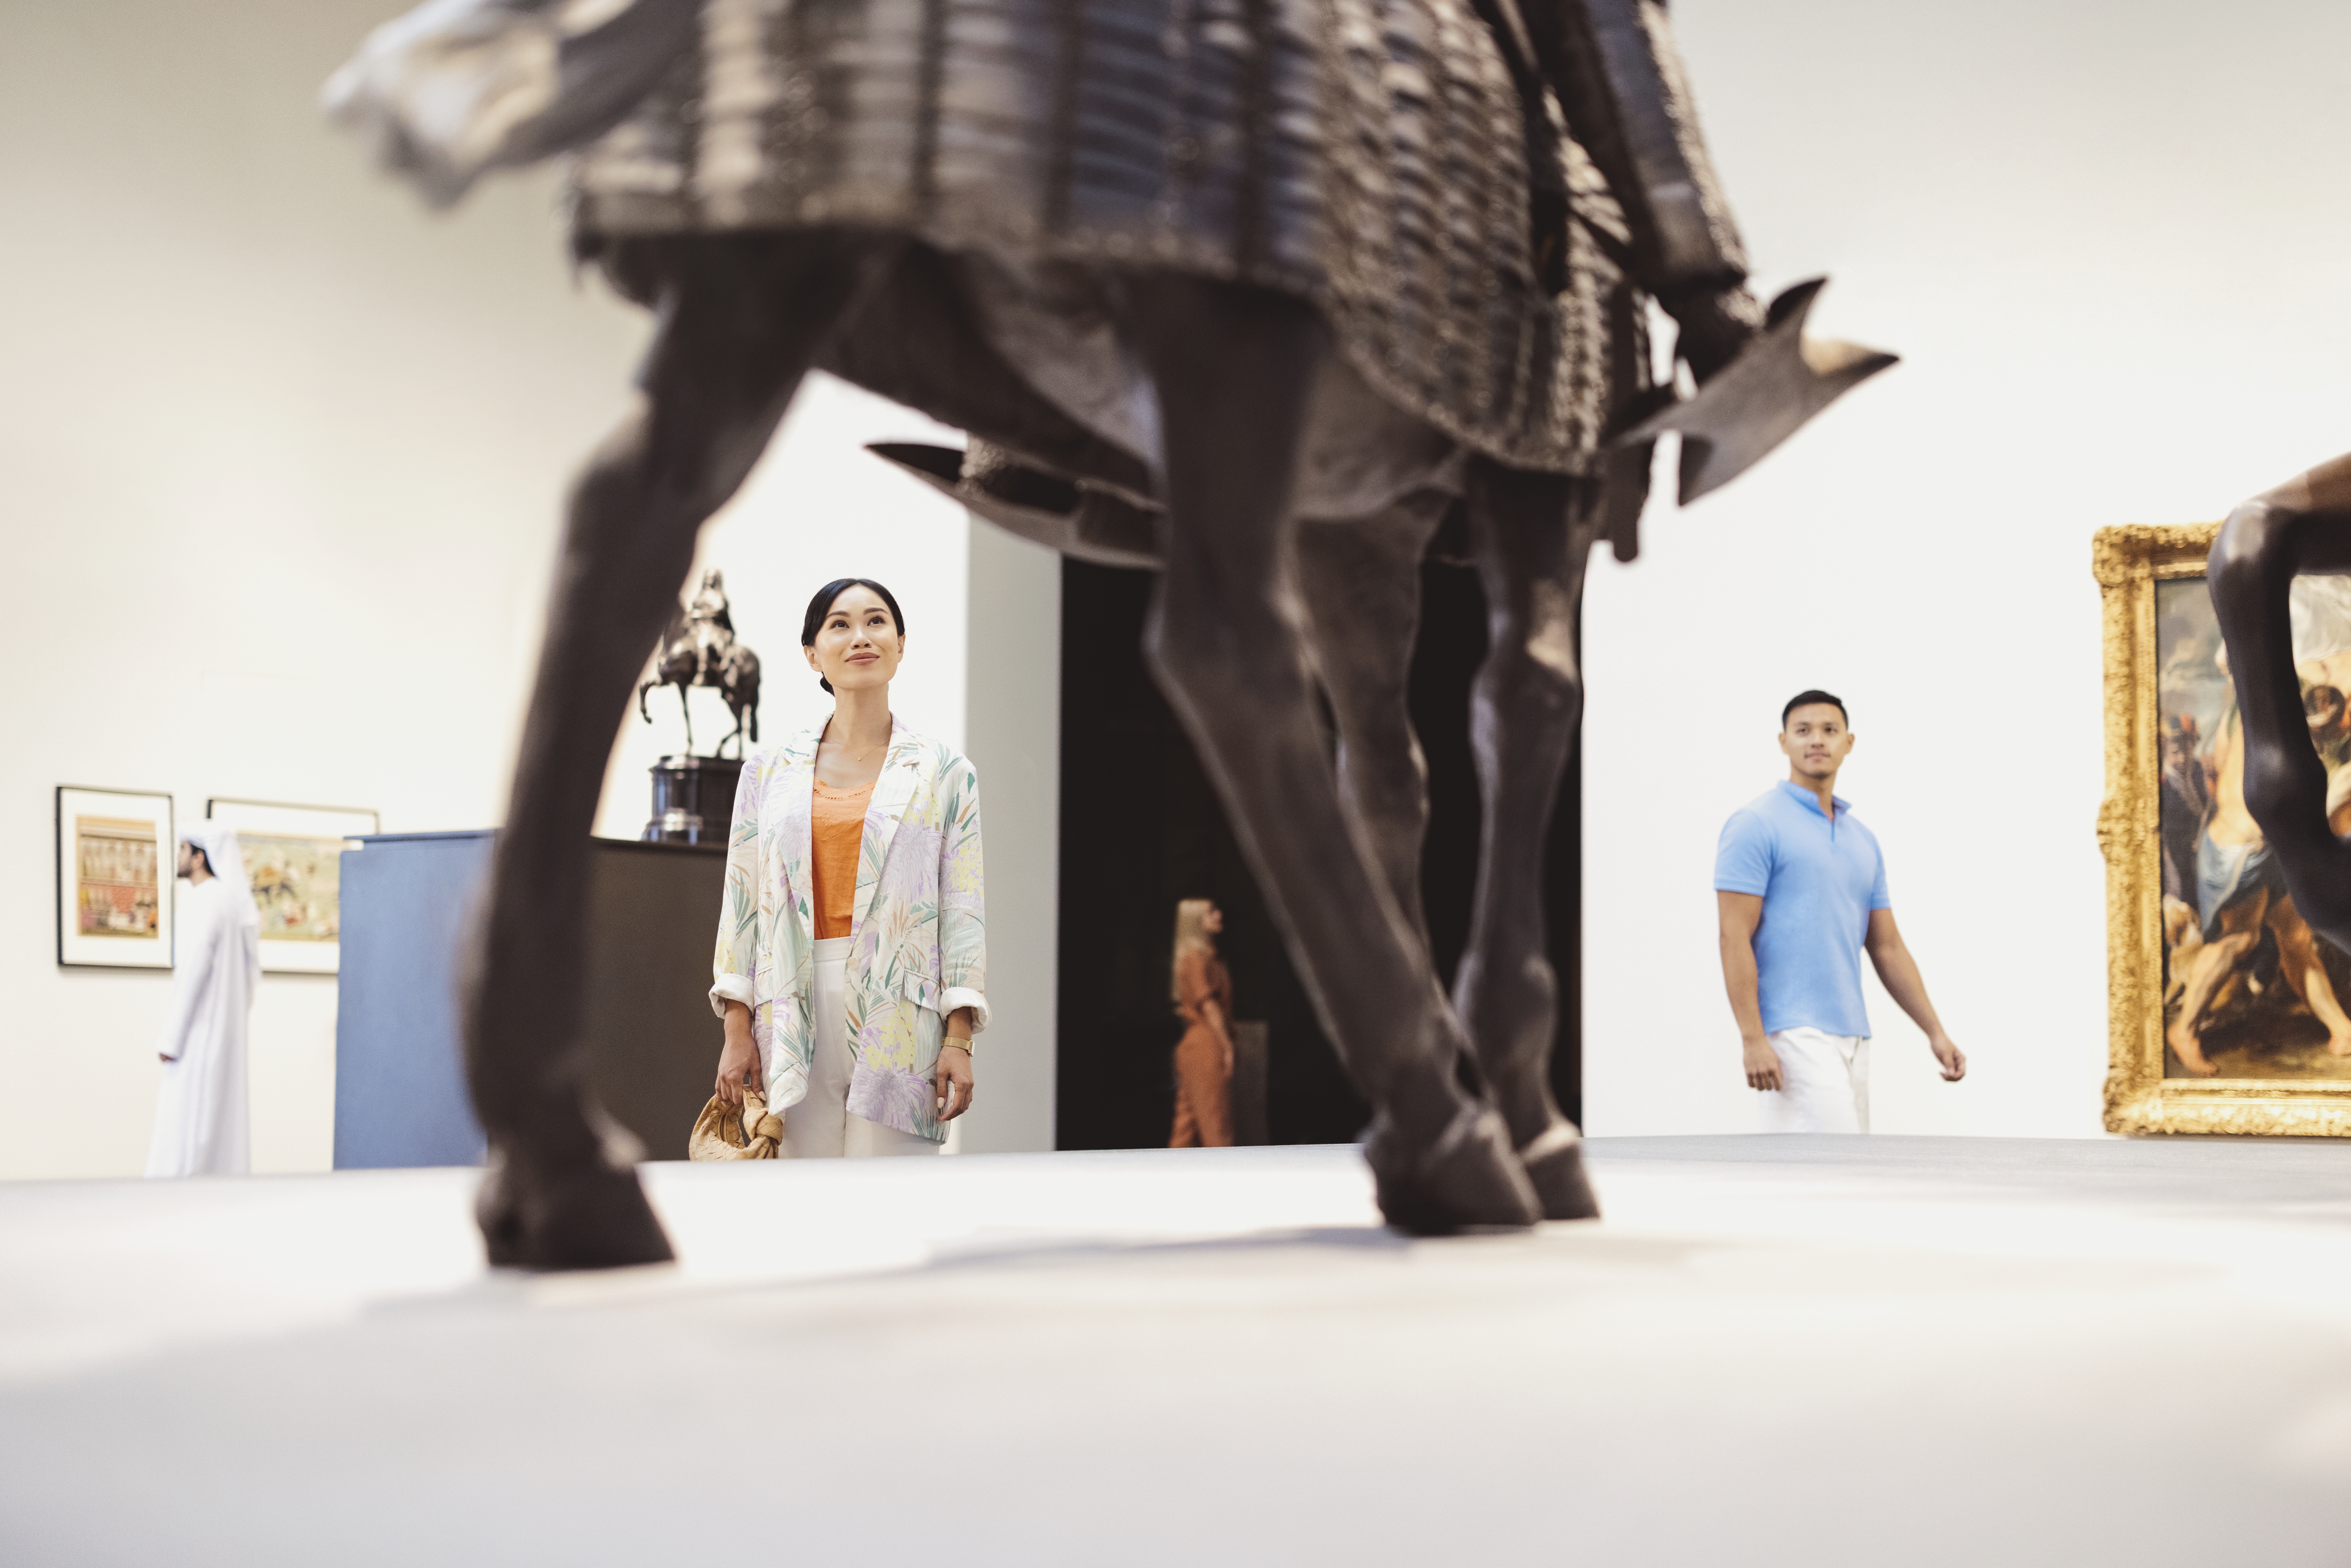 زوجان آسيويان يتأملان مجسم في متحف اللوفر أبوظبي